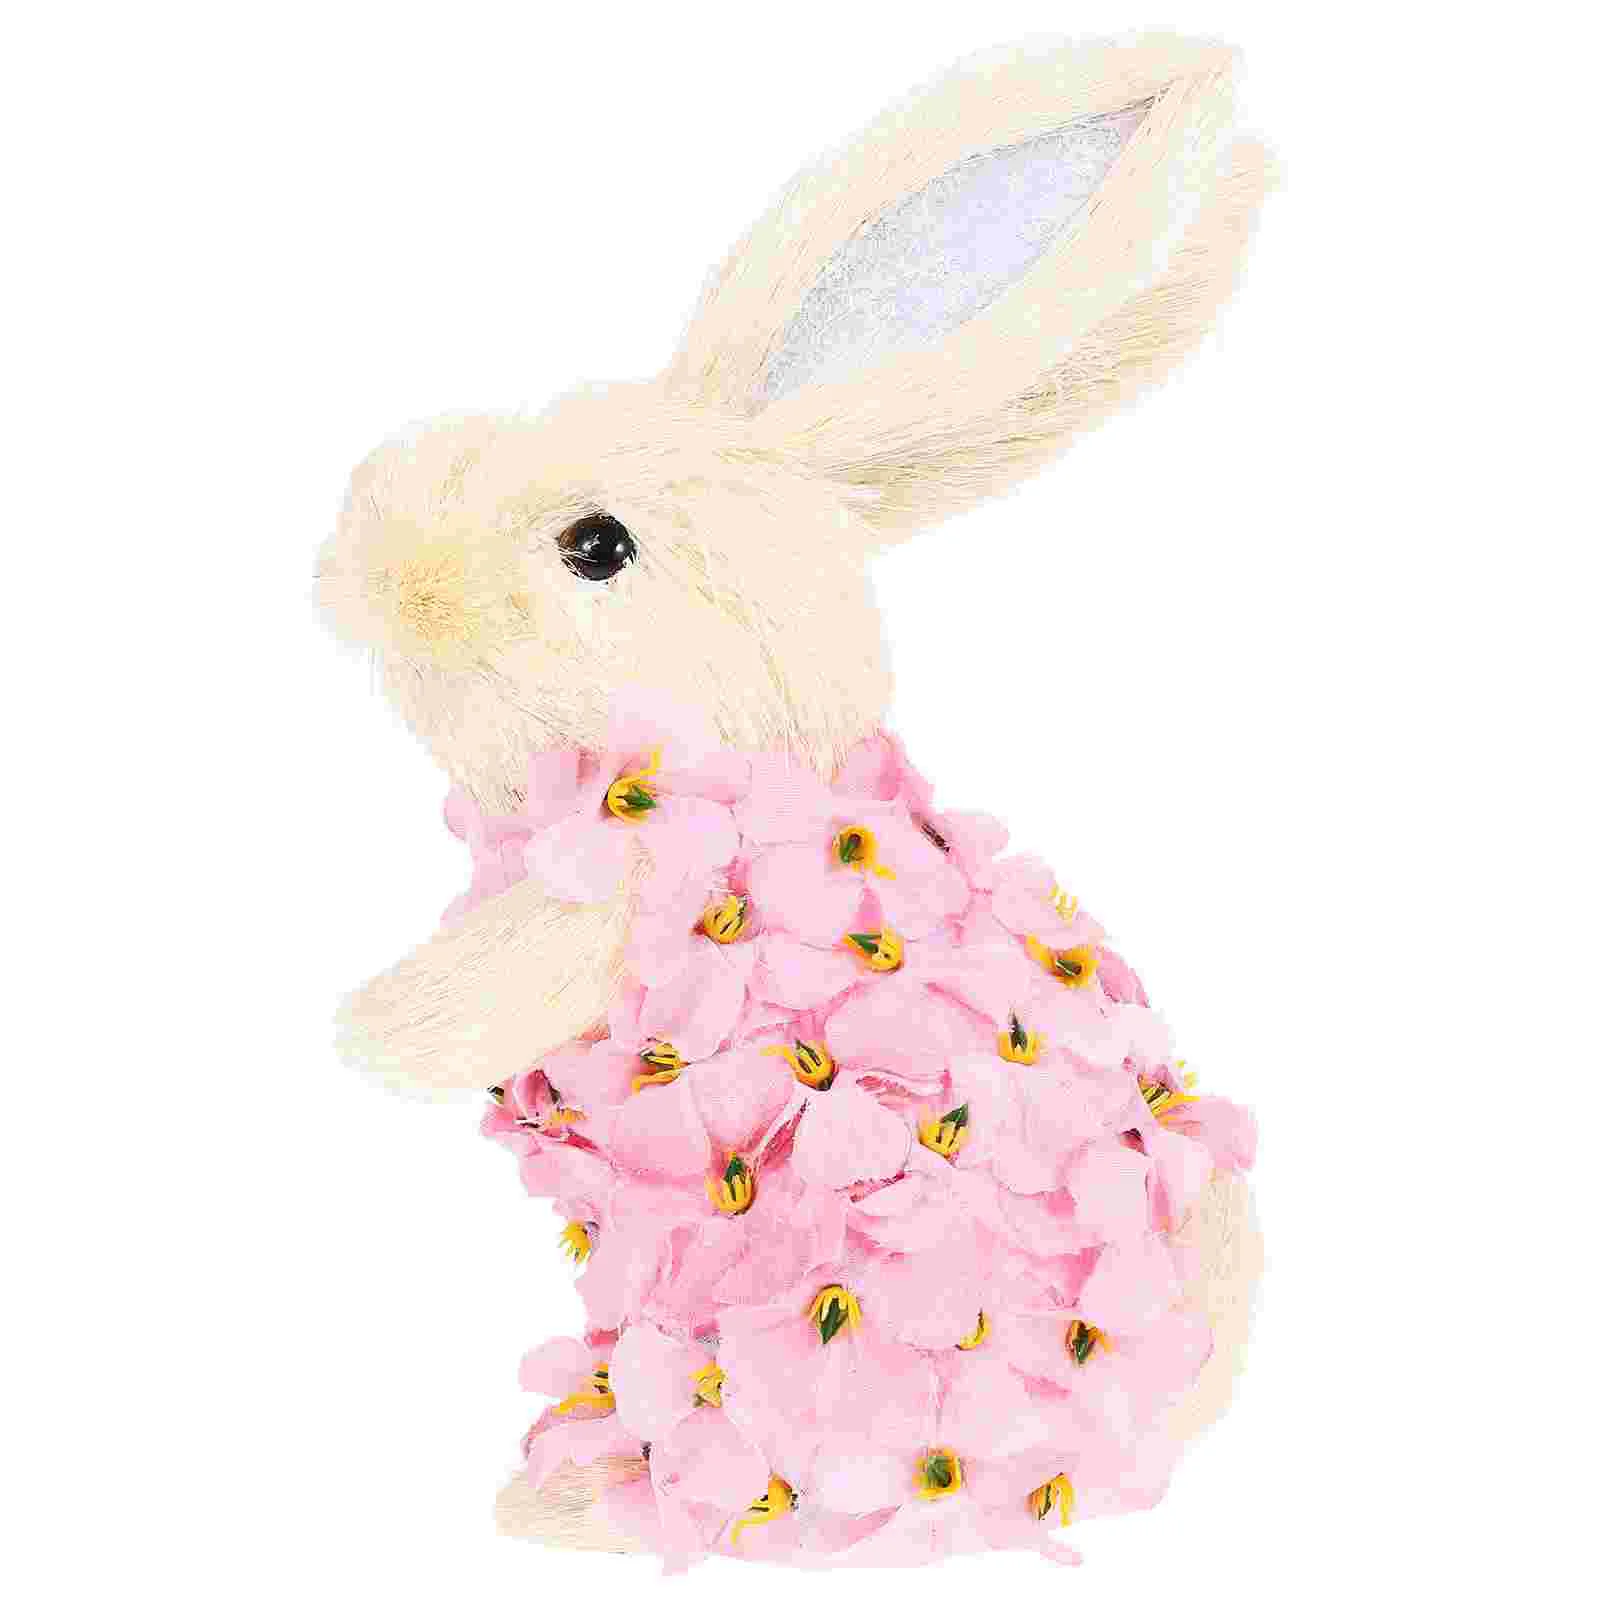 Фигурка кролика, Статуэтка Кролика, скульптура Пасхального кролика, украшение для Пасхальной вечеринки, украшение для кролика